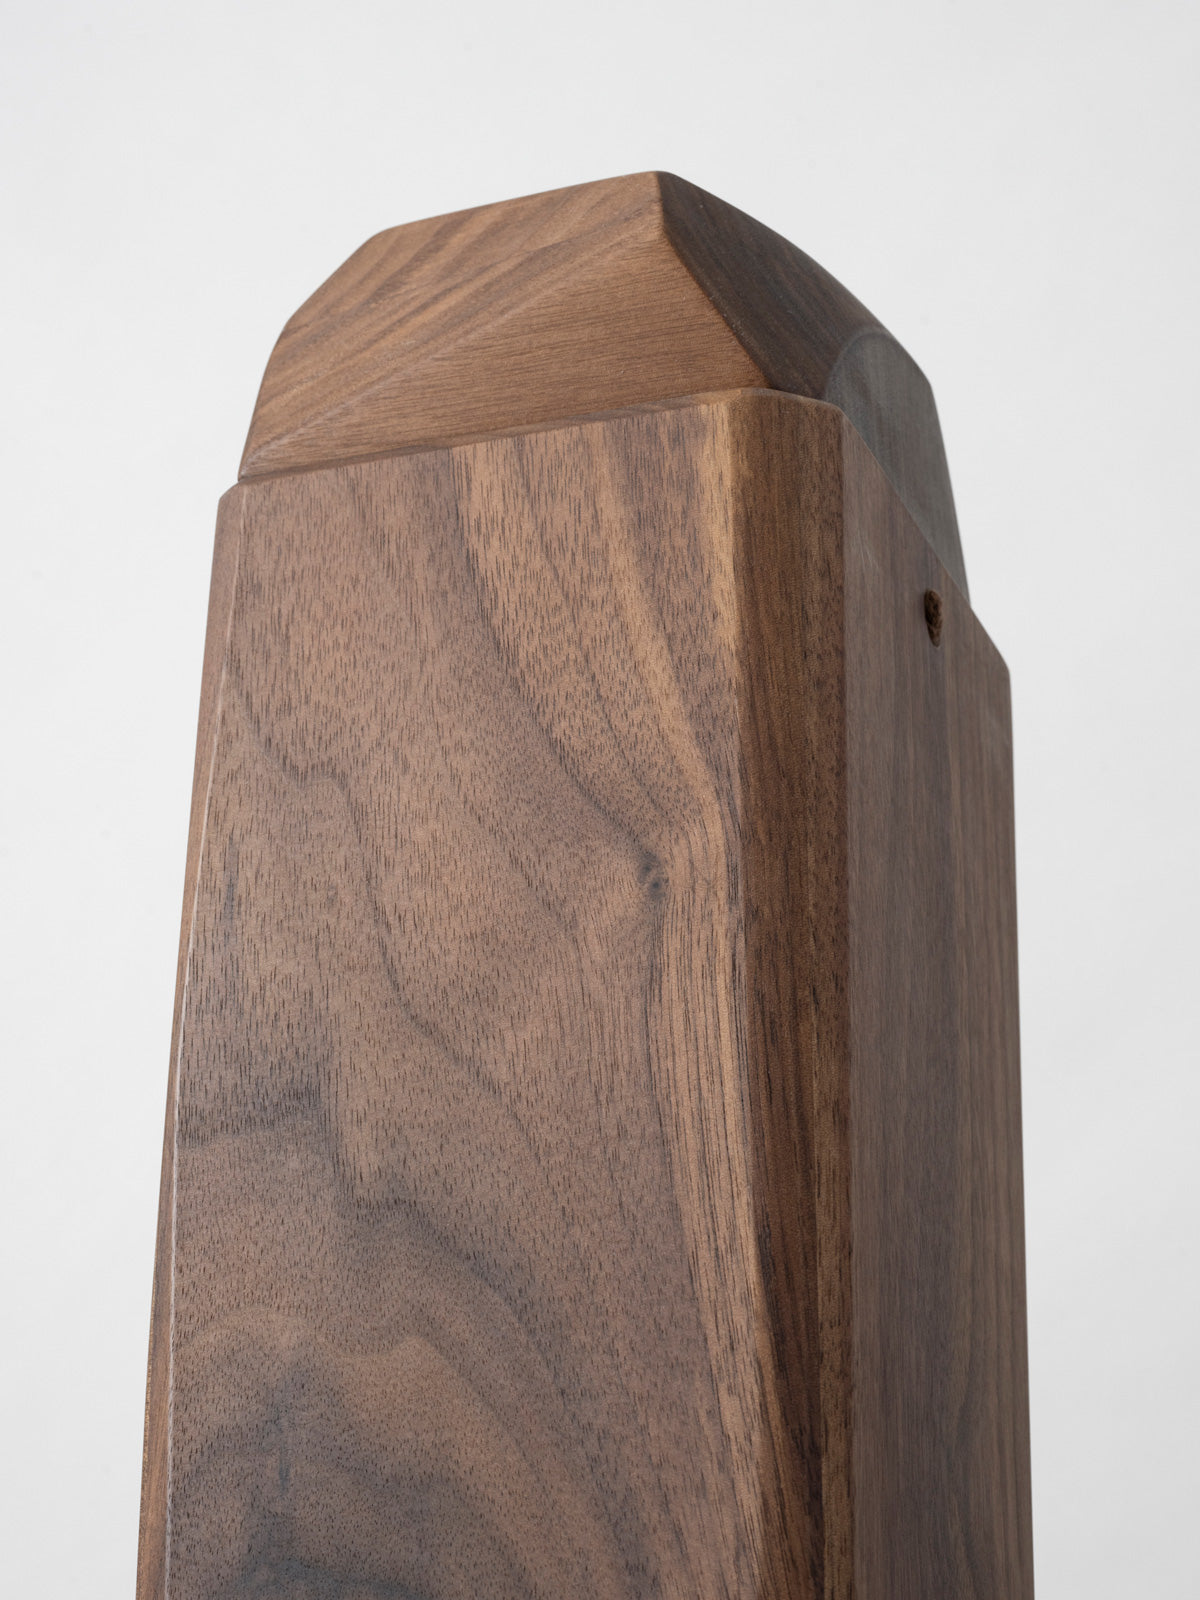 abbaubare Holzurne für Naturbestattung, Urnenbestattung – Juglan von urnique